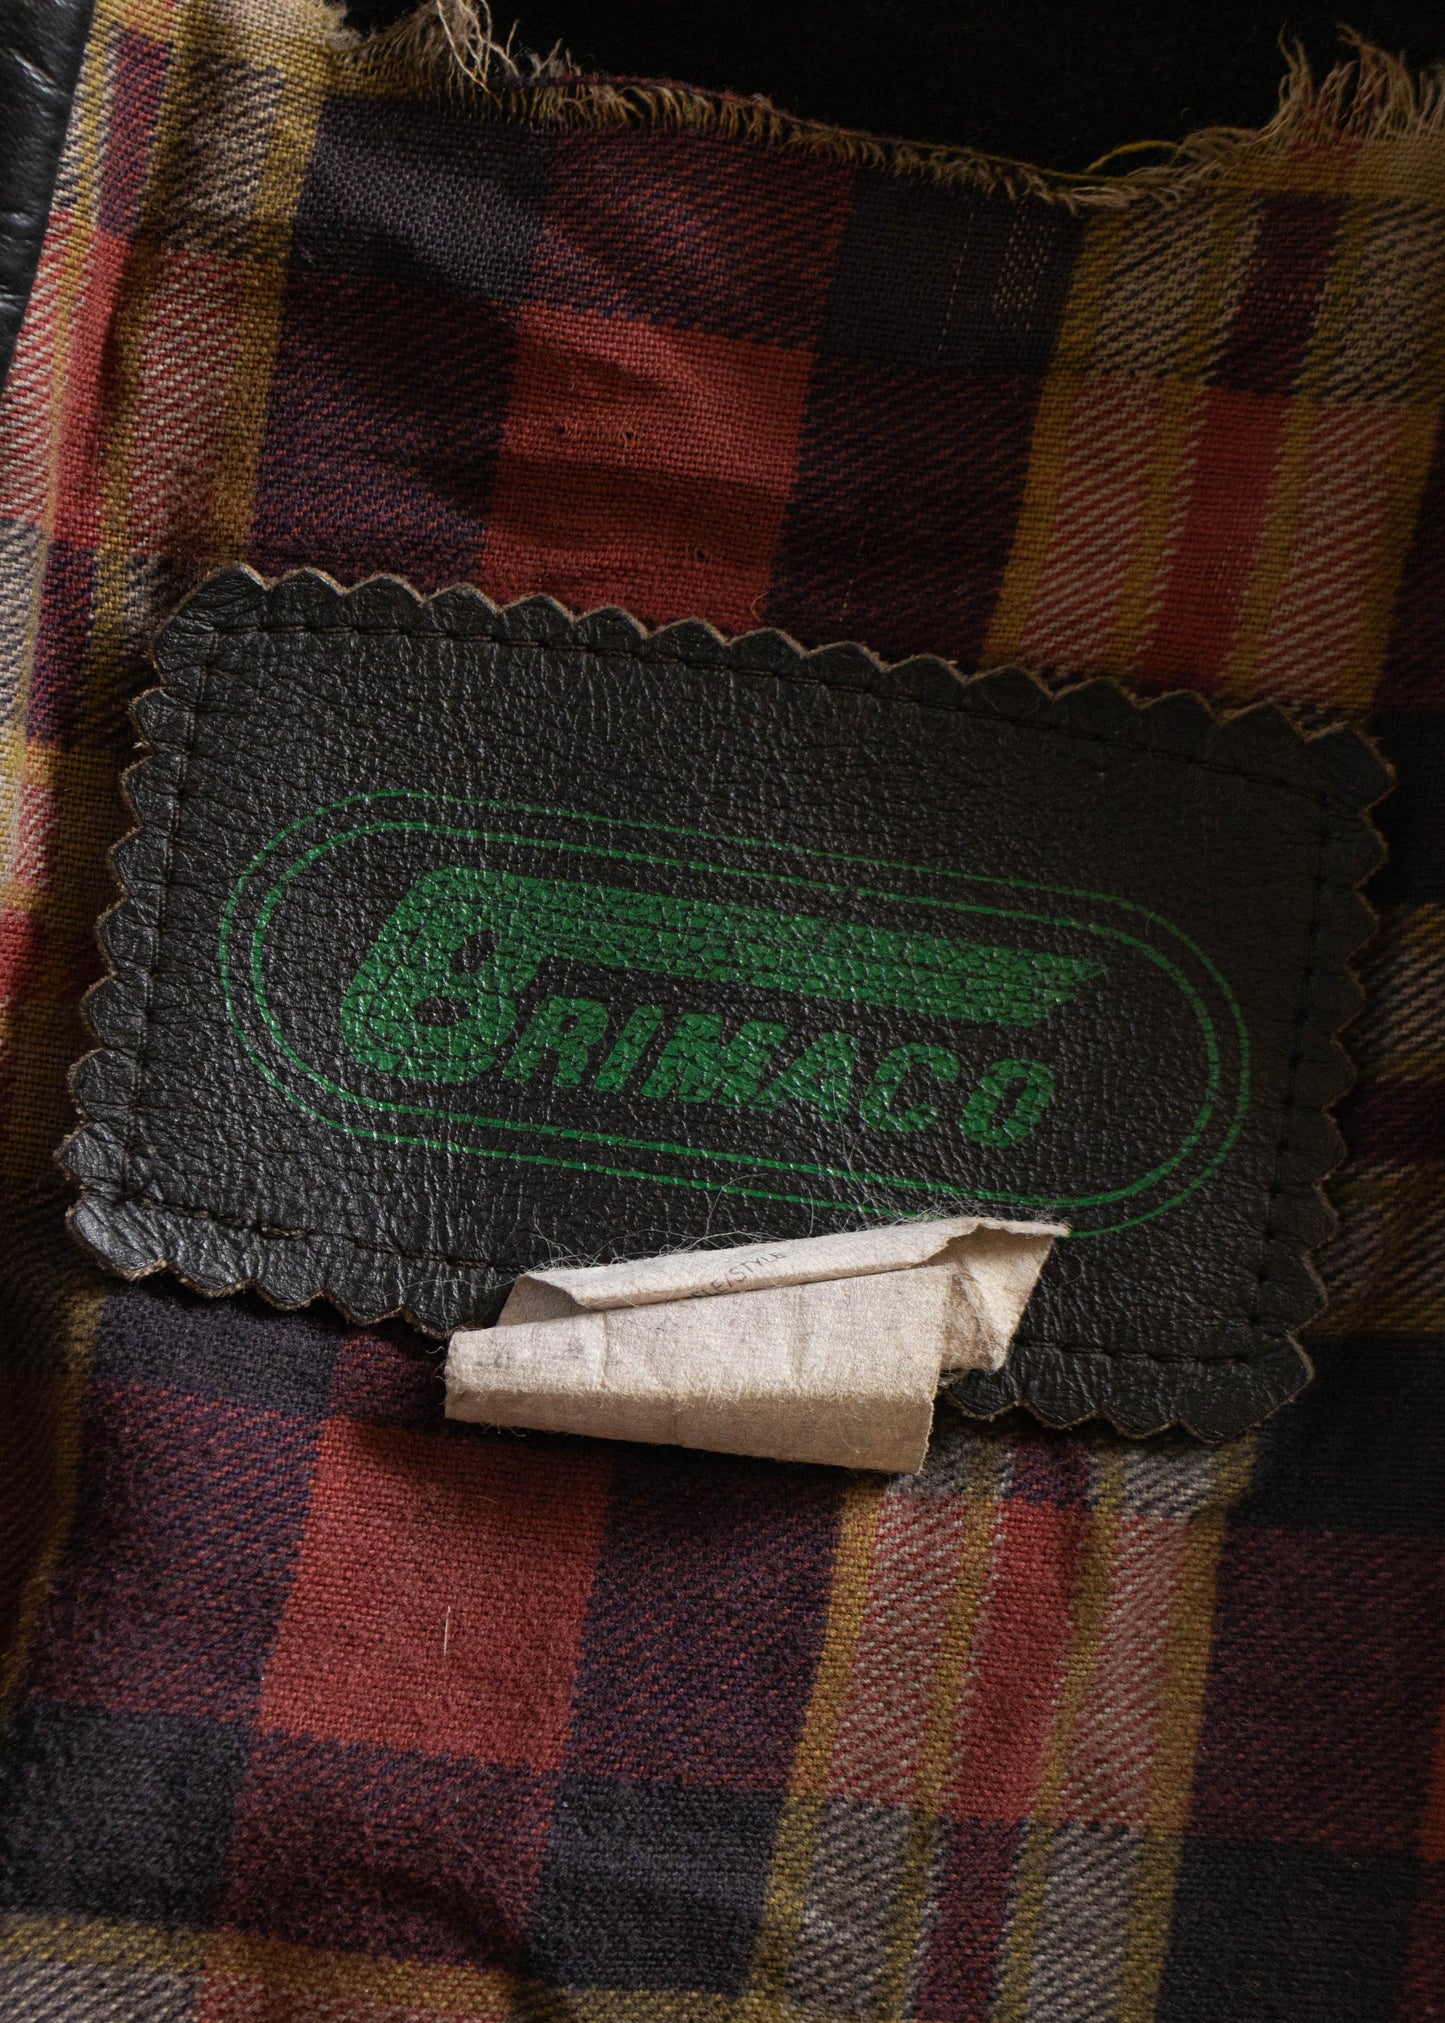 1980s Brimaco Leather Moto Jacket Size S/M